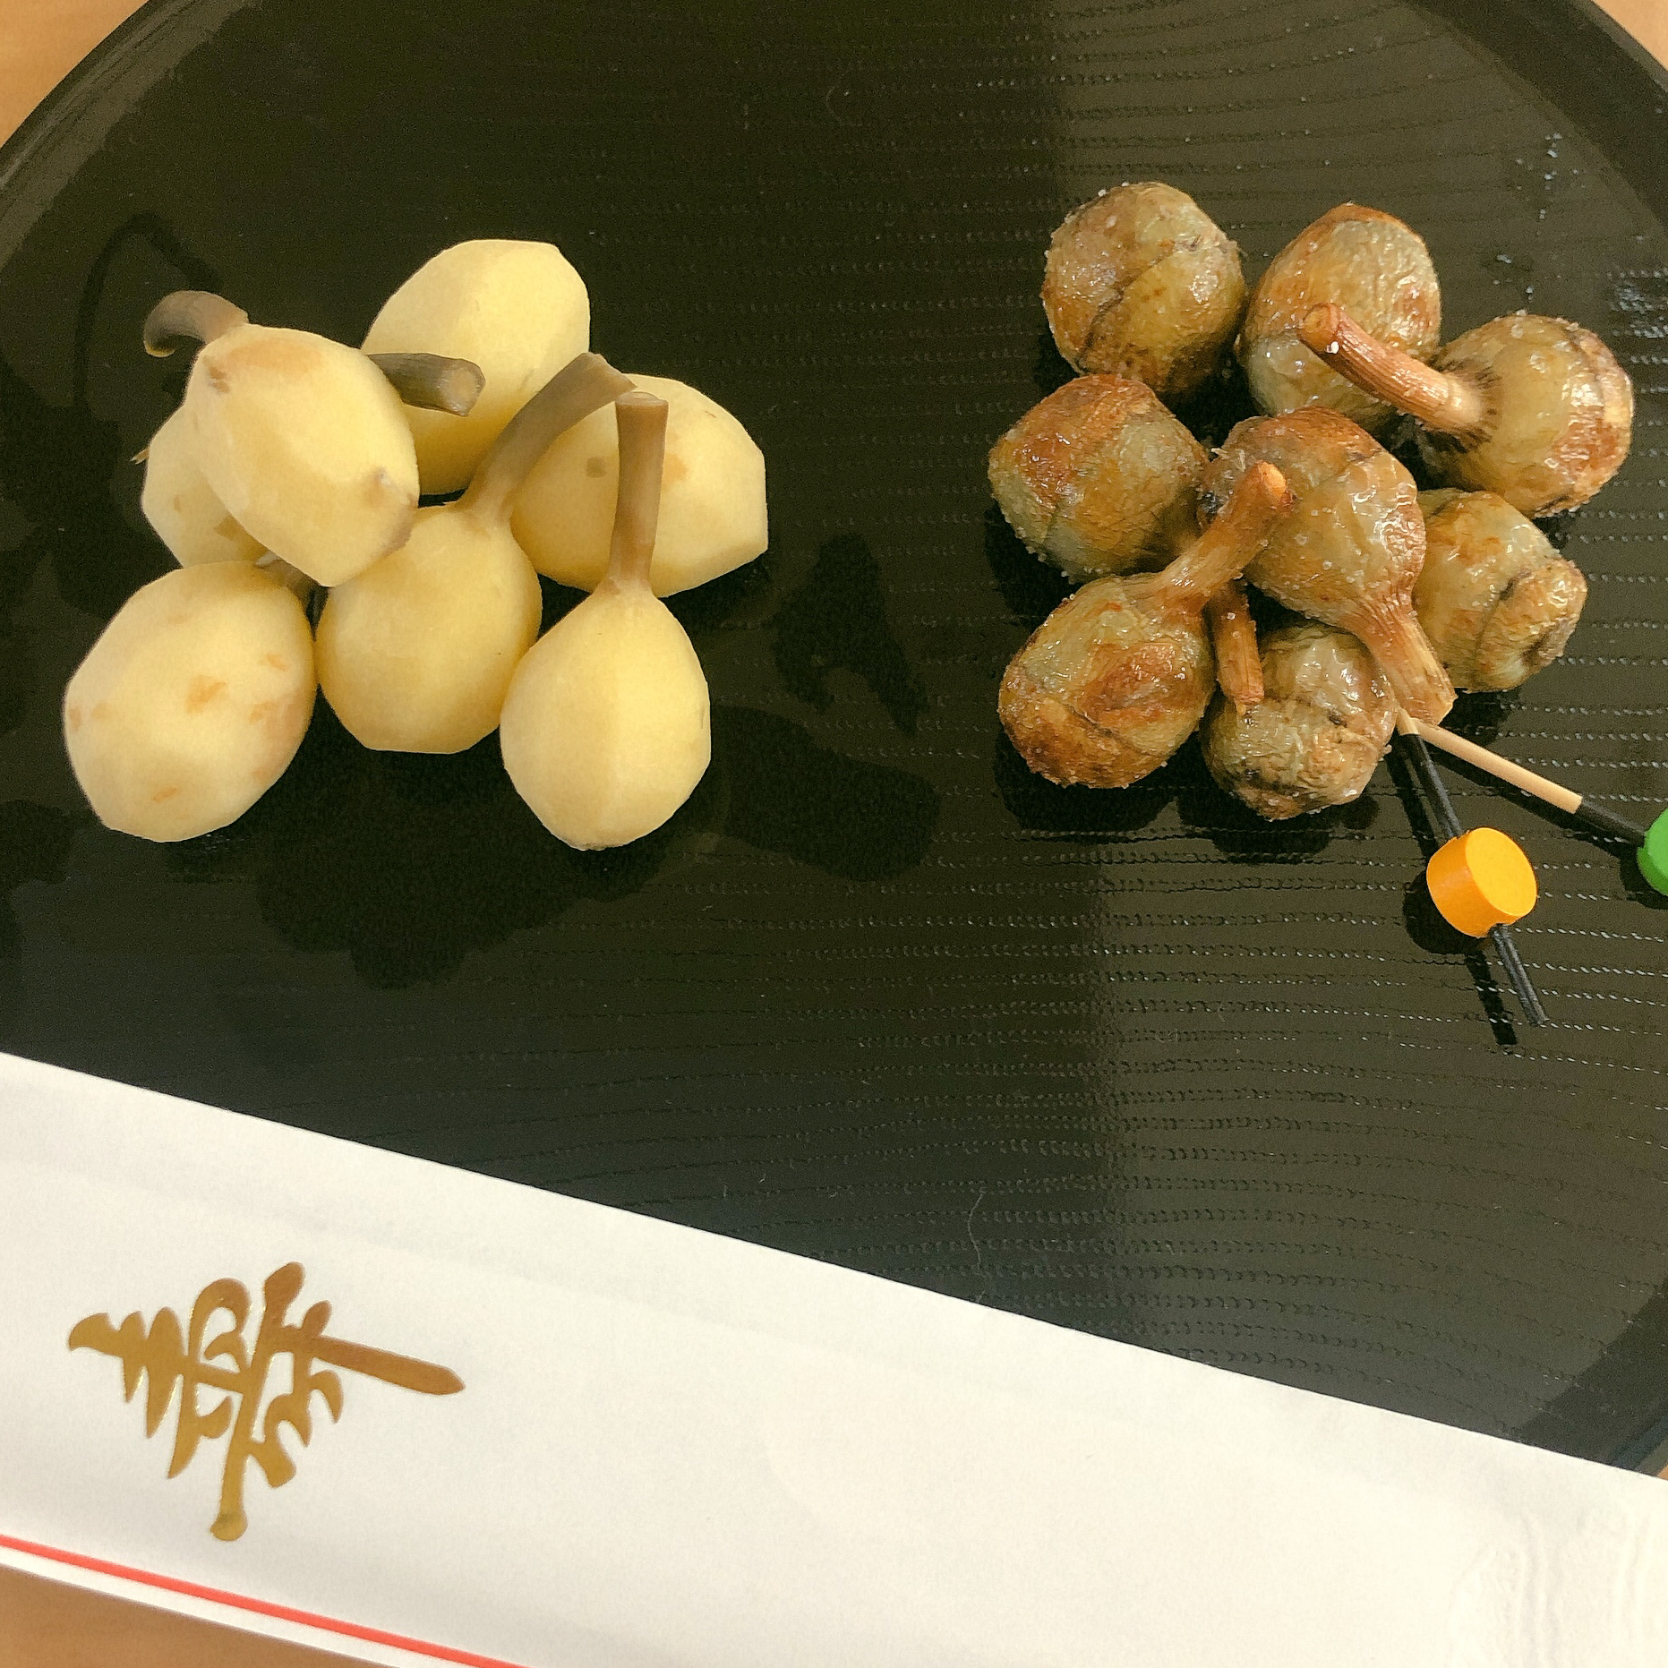 くわいのうま煮 くわいの素揚げ 手作りおせちグランプリ21 ヤマサ醤油株式会社